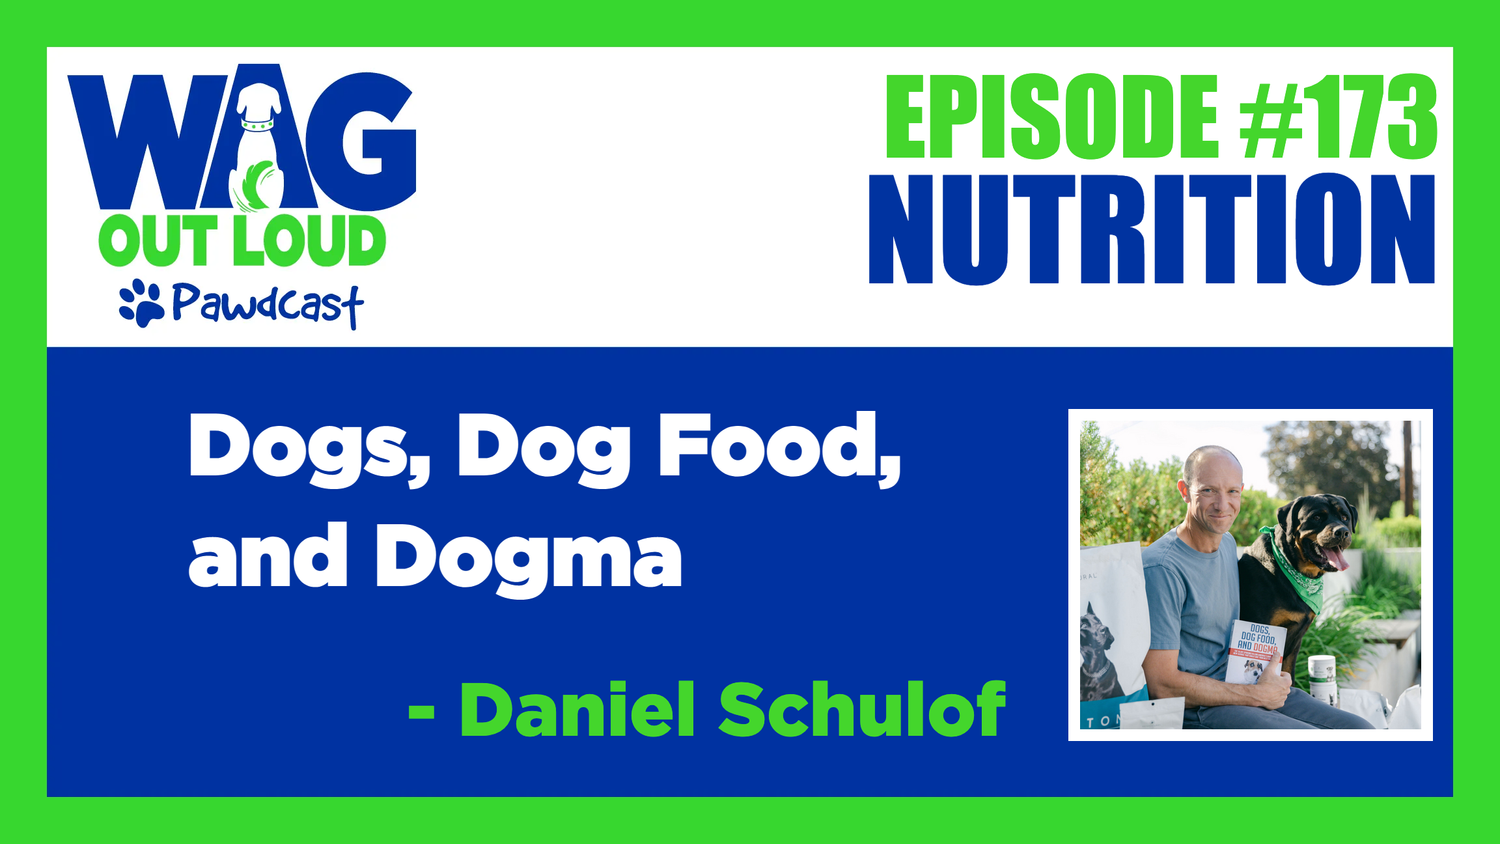 Dogs, Dog Food, and Dogma